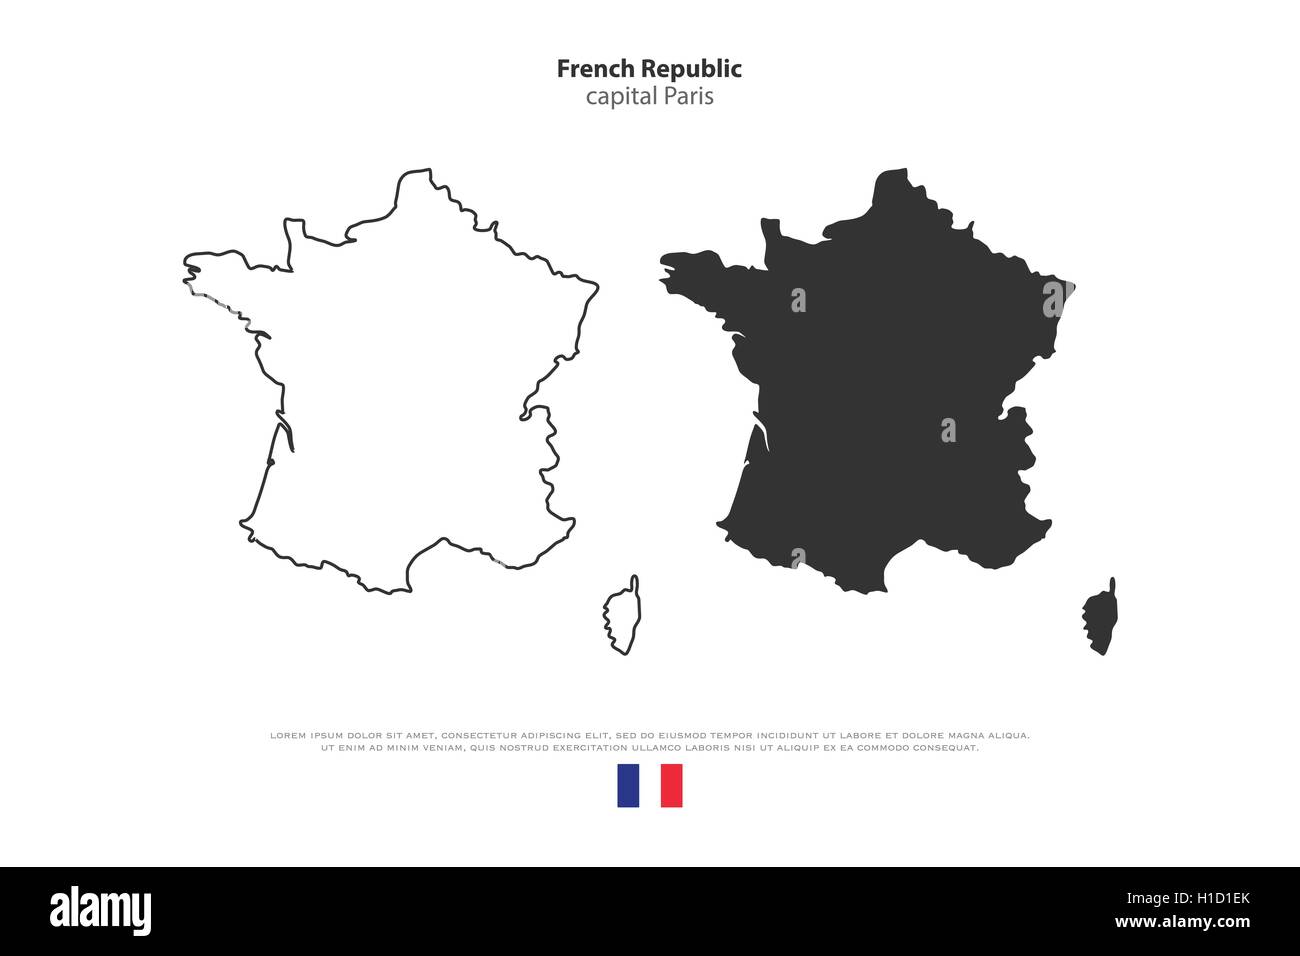 Französischen Republik Karte Umriss und offizielle Flaggensymbol isoliert auf weißem Hintergrund. Vektor-Illustration Frankreich politische Karte. Europ Stock Vektor